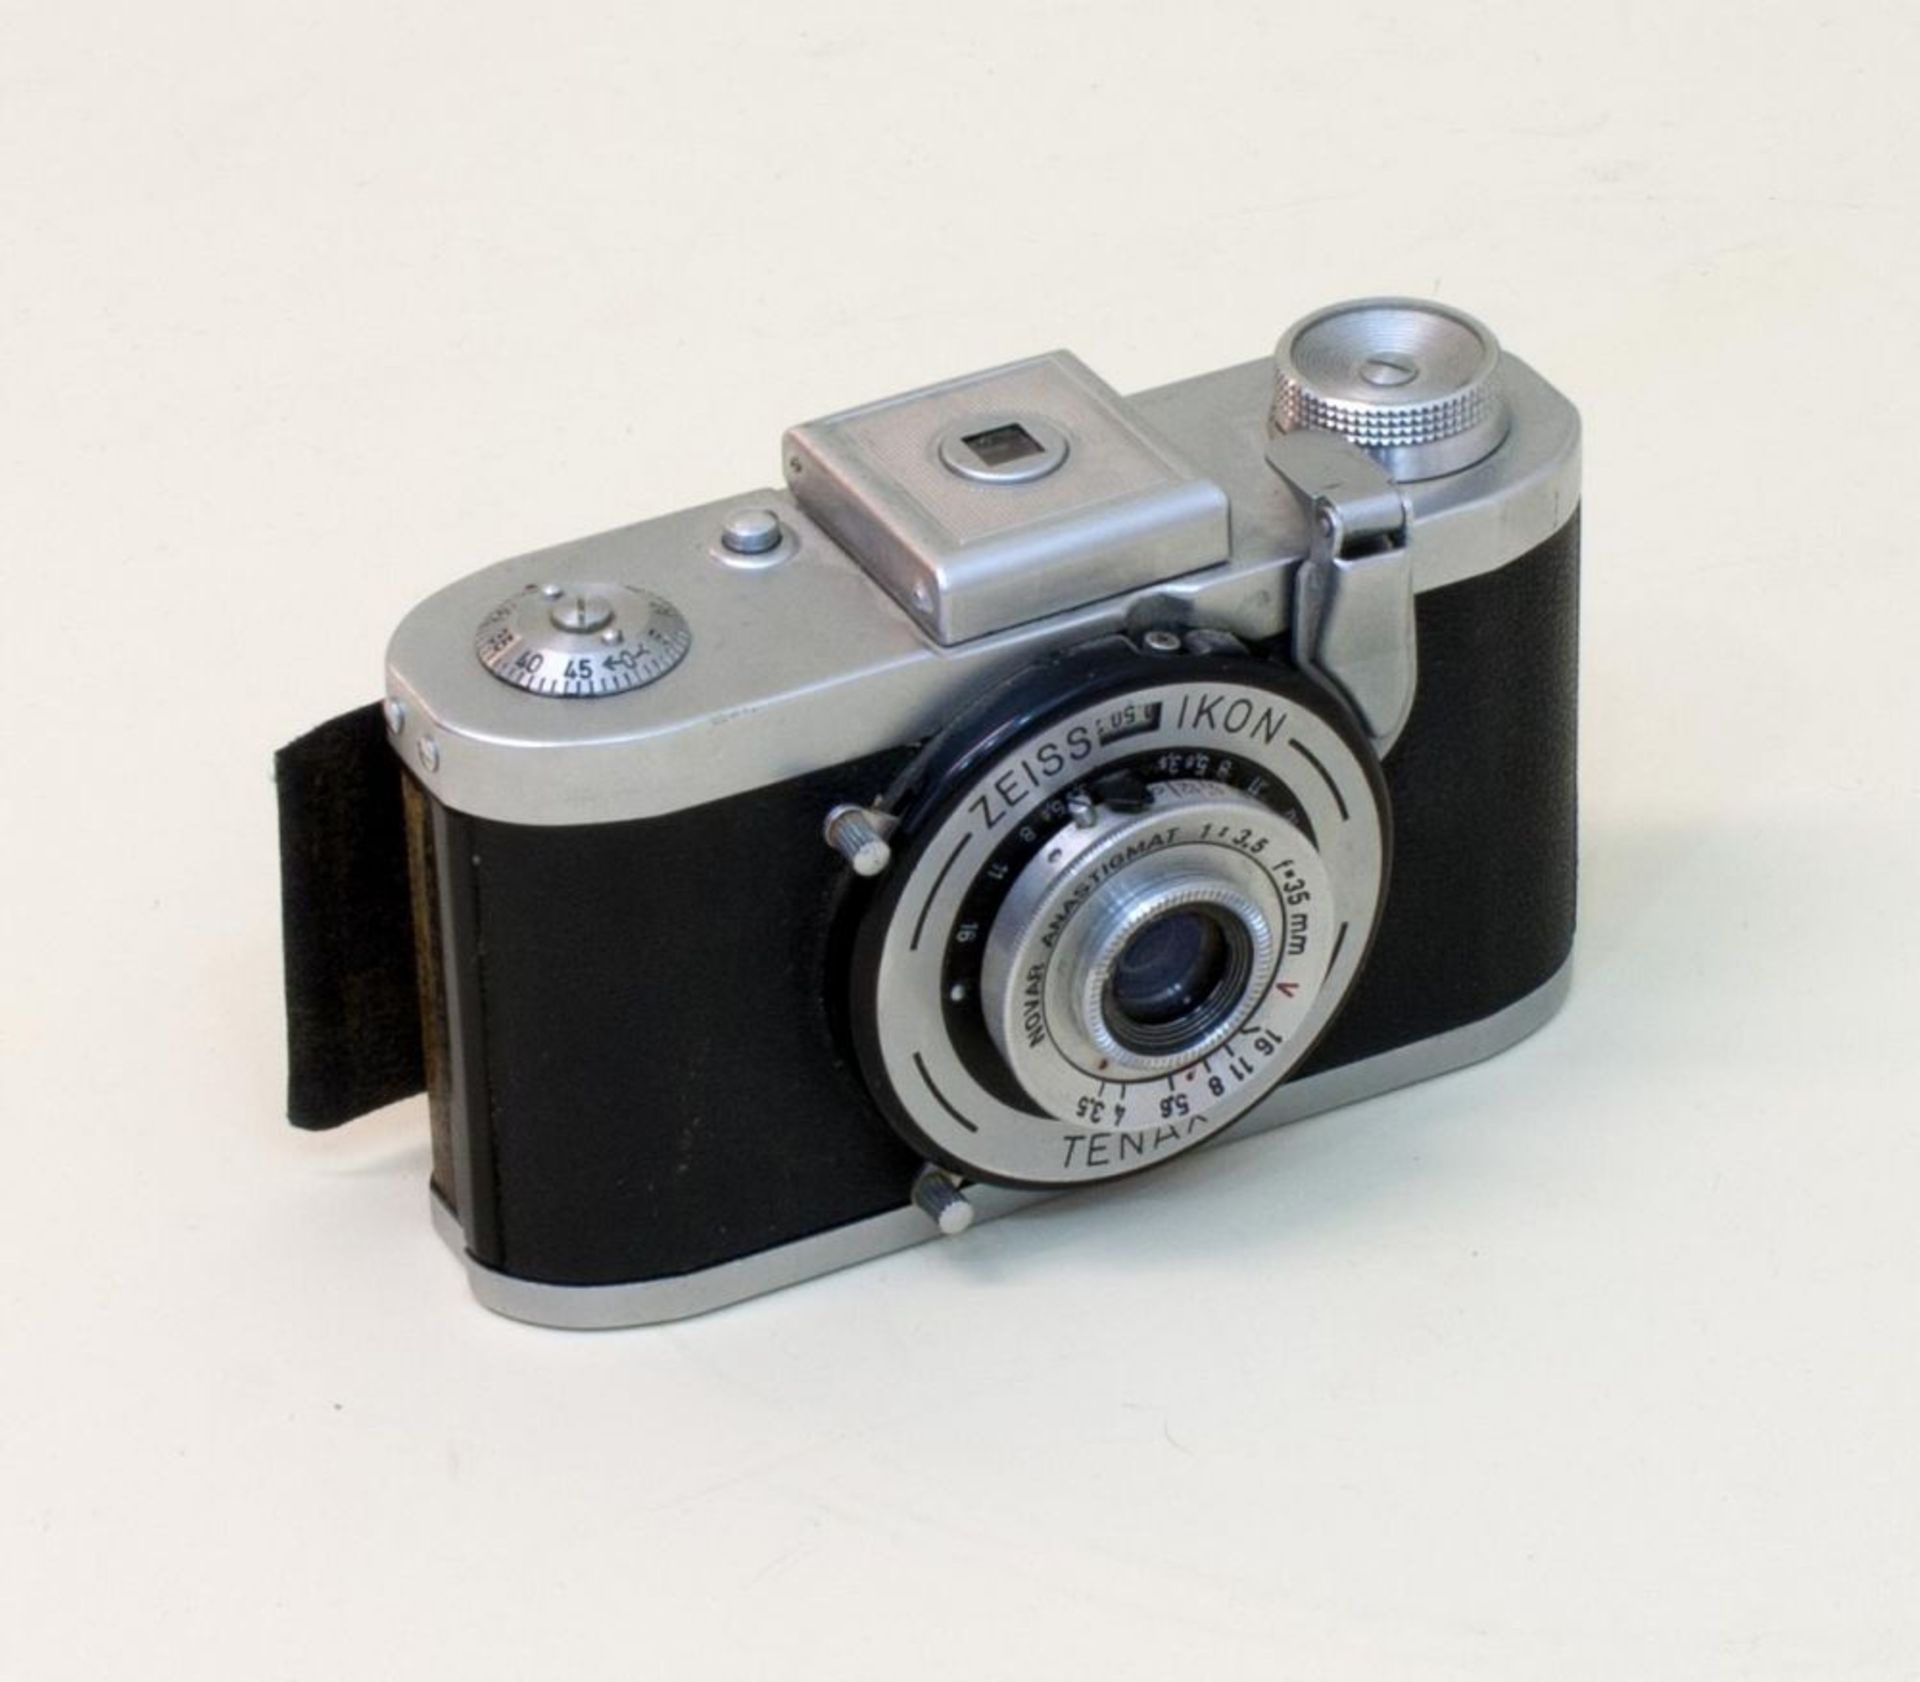 Tenax I  Kamerawerke Zeiss-Ikon AG, 1930, Kleinbild-Sucherkamera    Mindestpreis: 25    Dieses Los